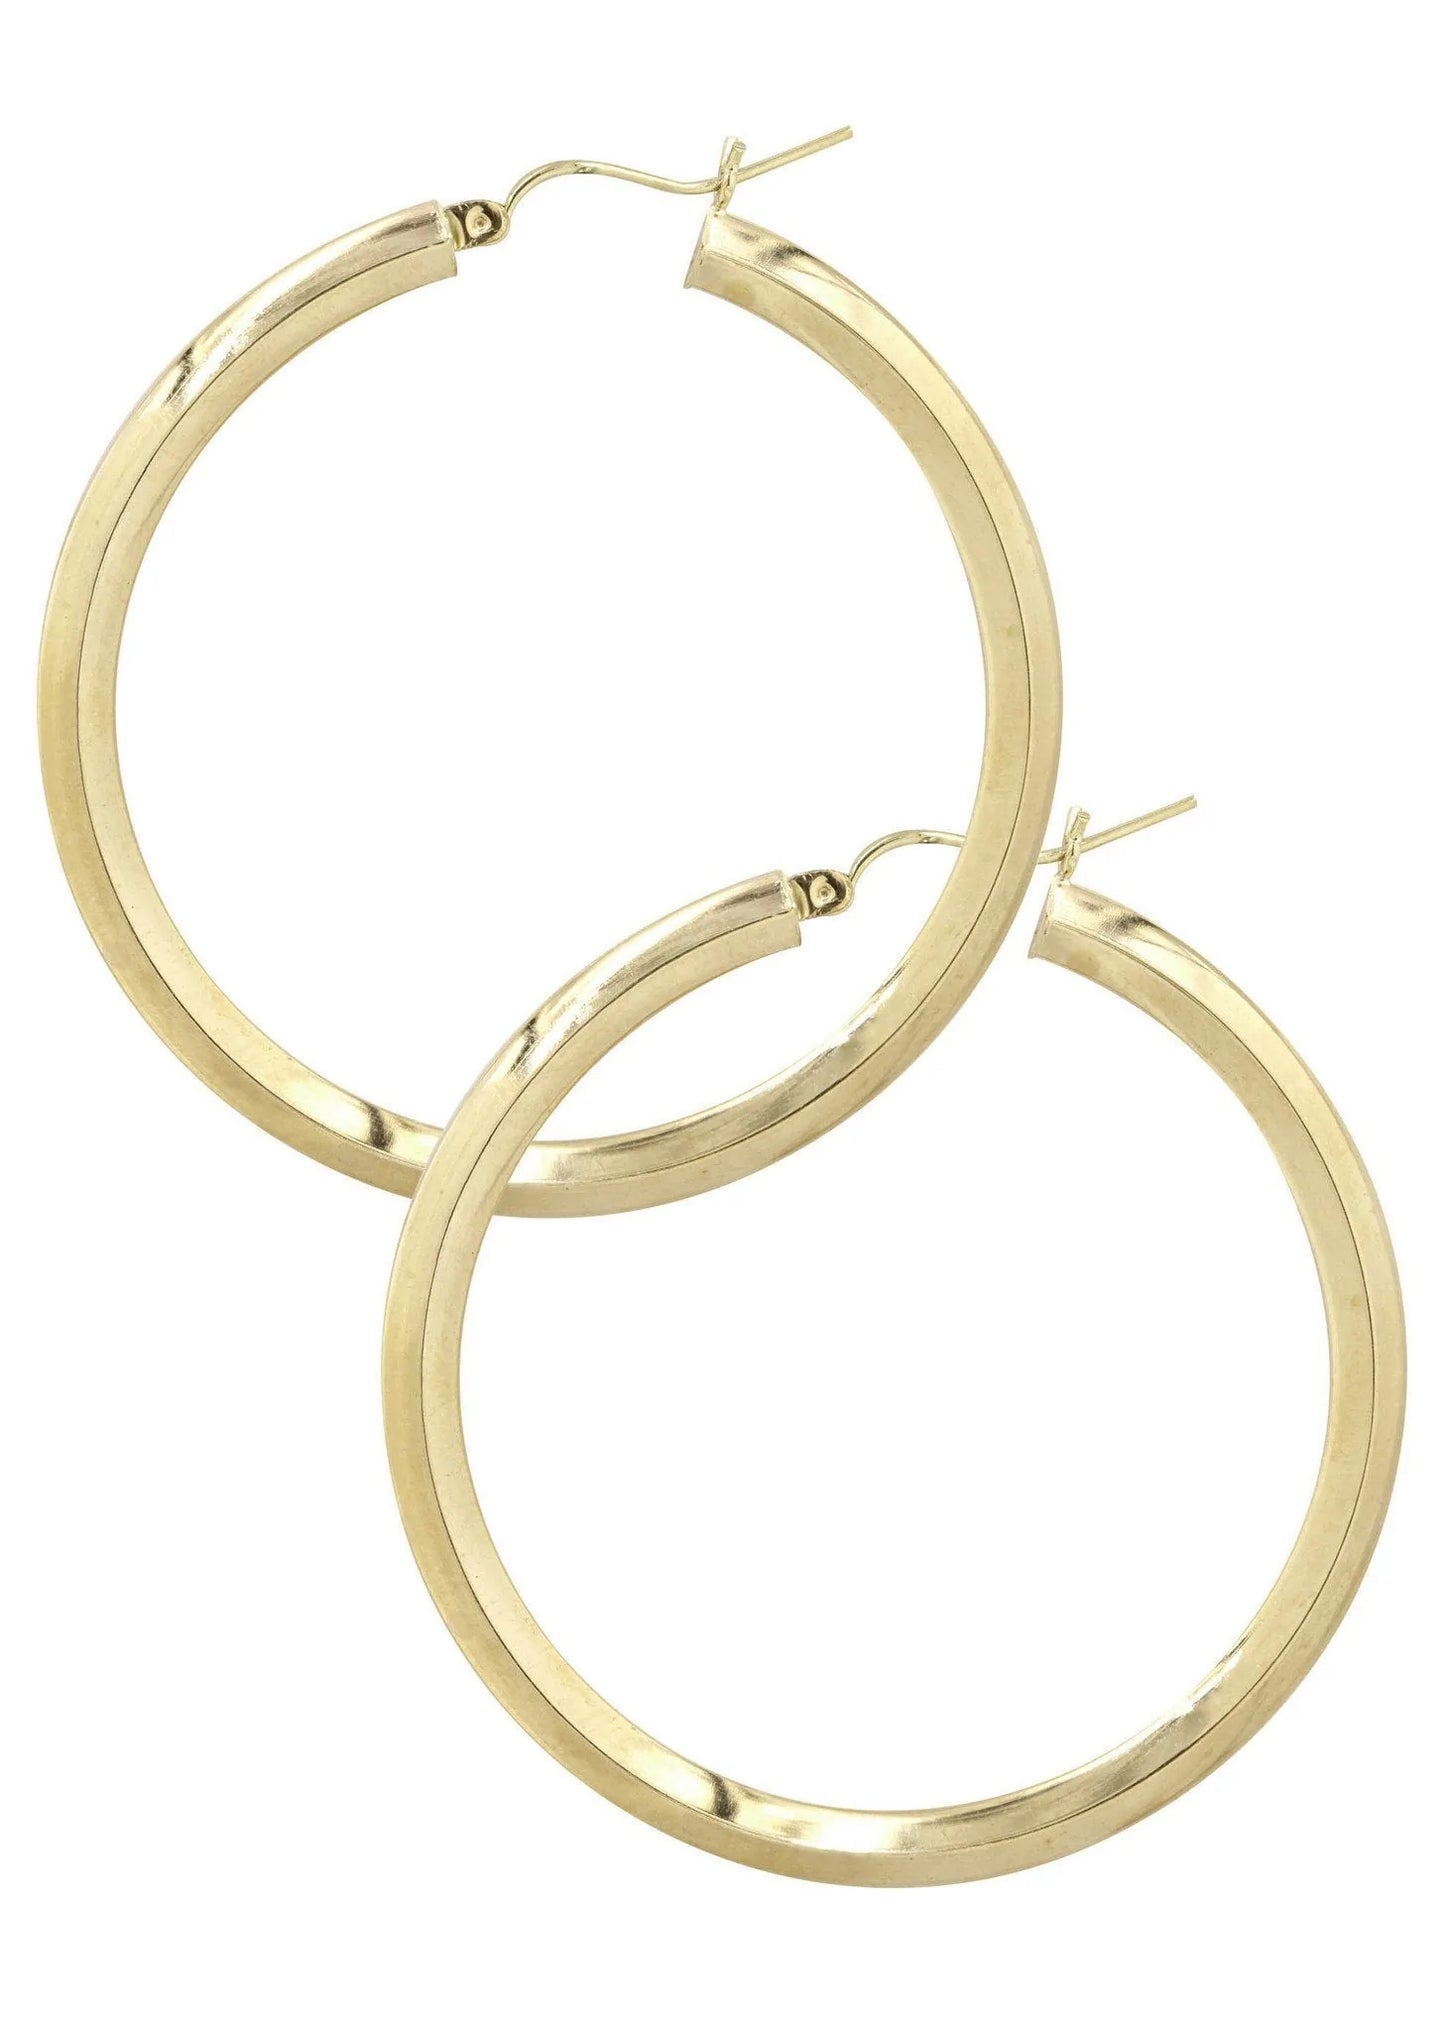 10K Gold Hoop Earrings | Customizable Size